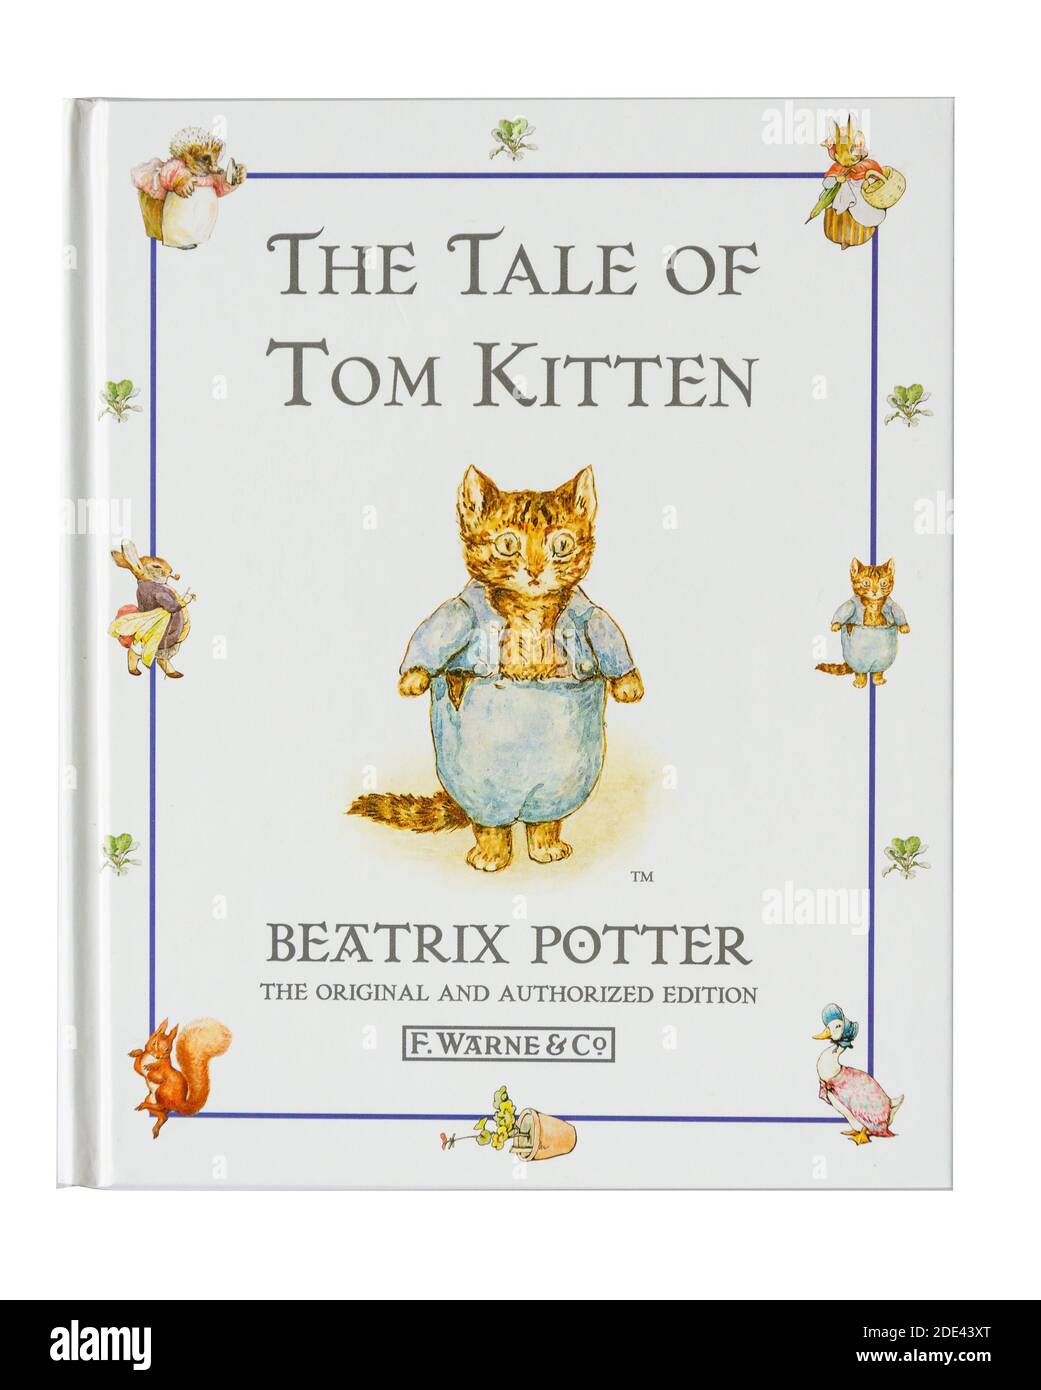 Il libro per bambini "The Tale of Tom Kitten" di Beatrix Potter, Greater London, England, Regno Unito Foto Stock